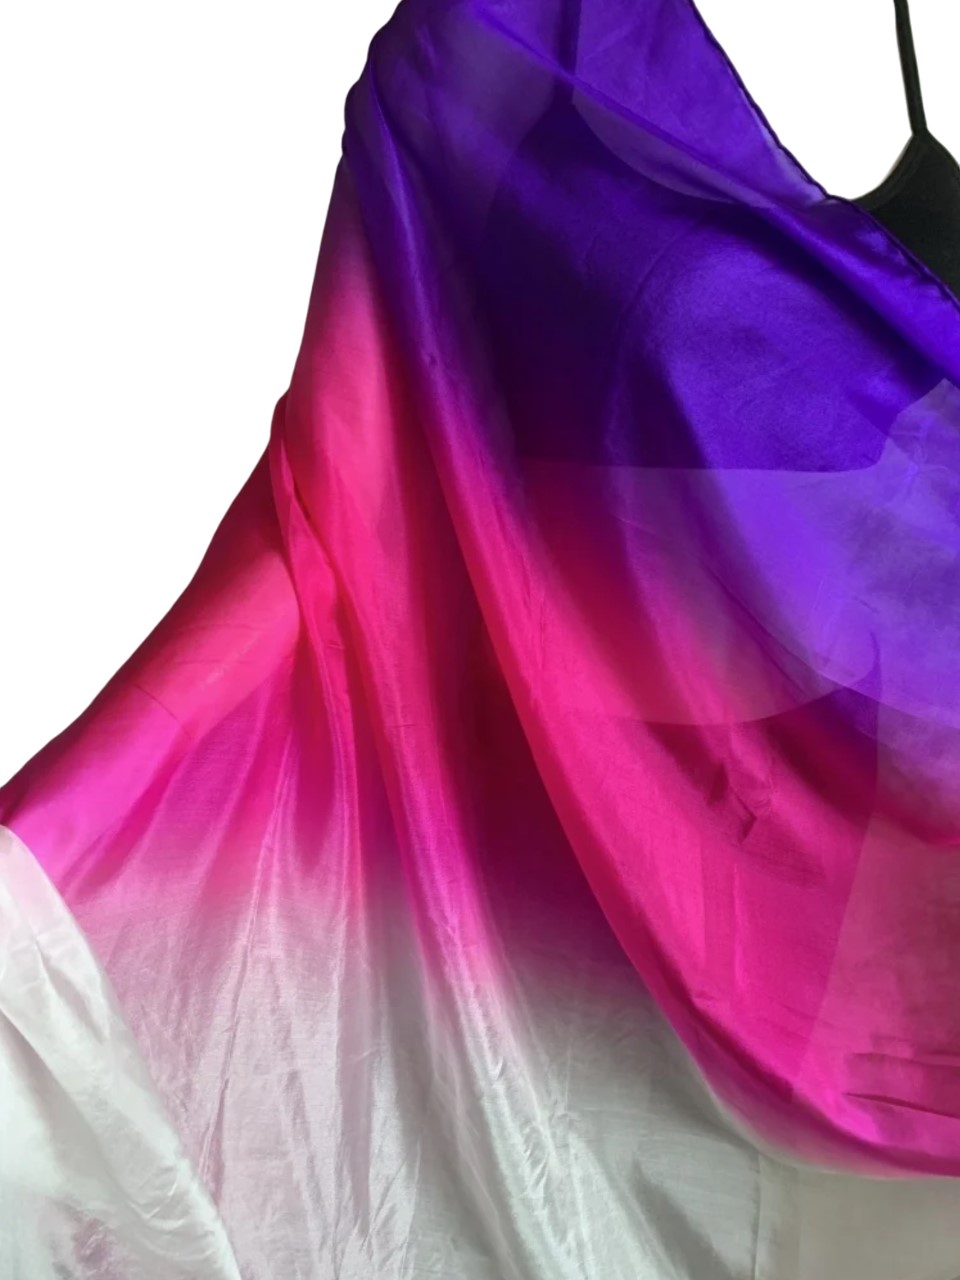 Платок-вуаль для танца 2,5м х 114 см, фиолетовый+малиновый+белый